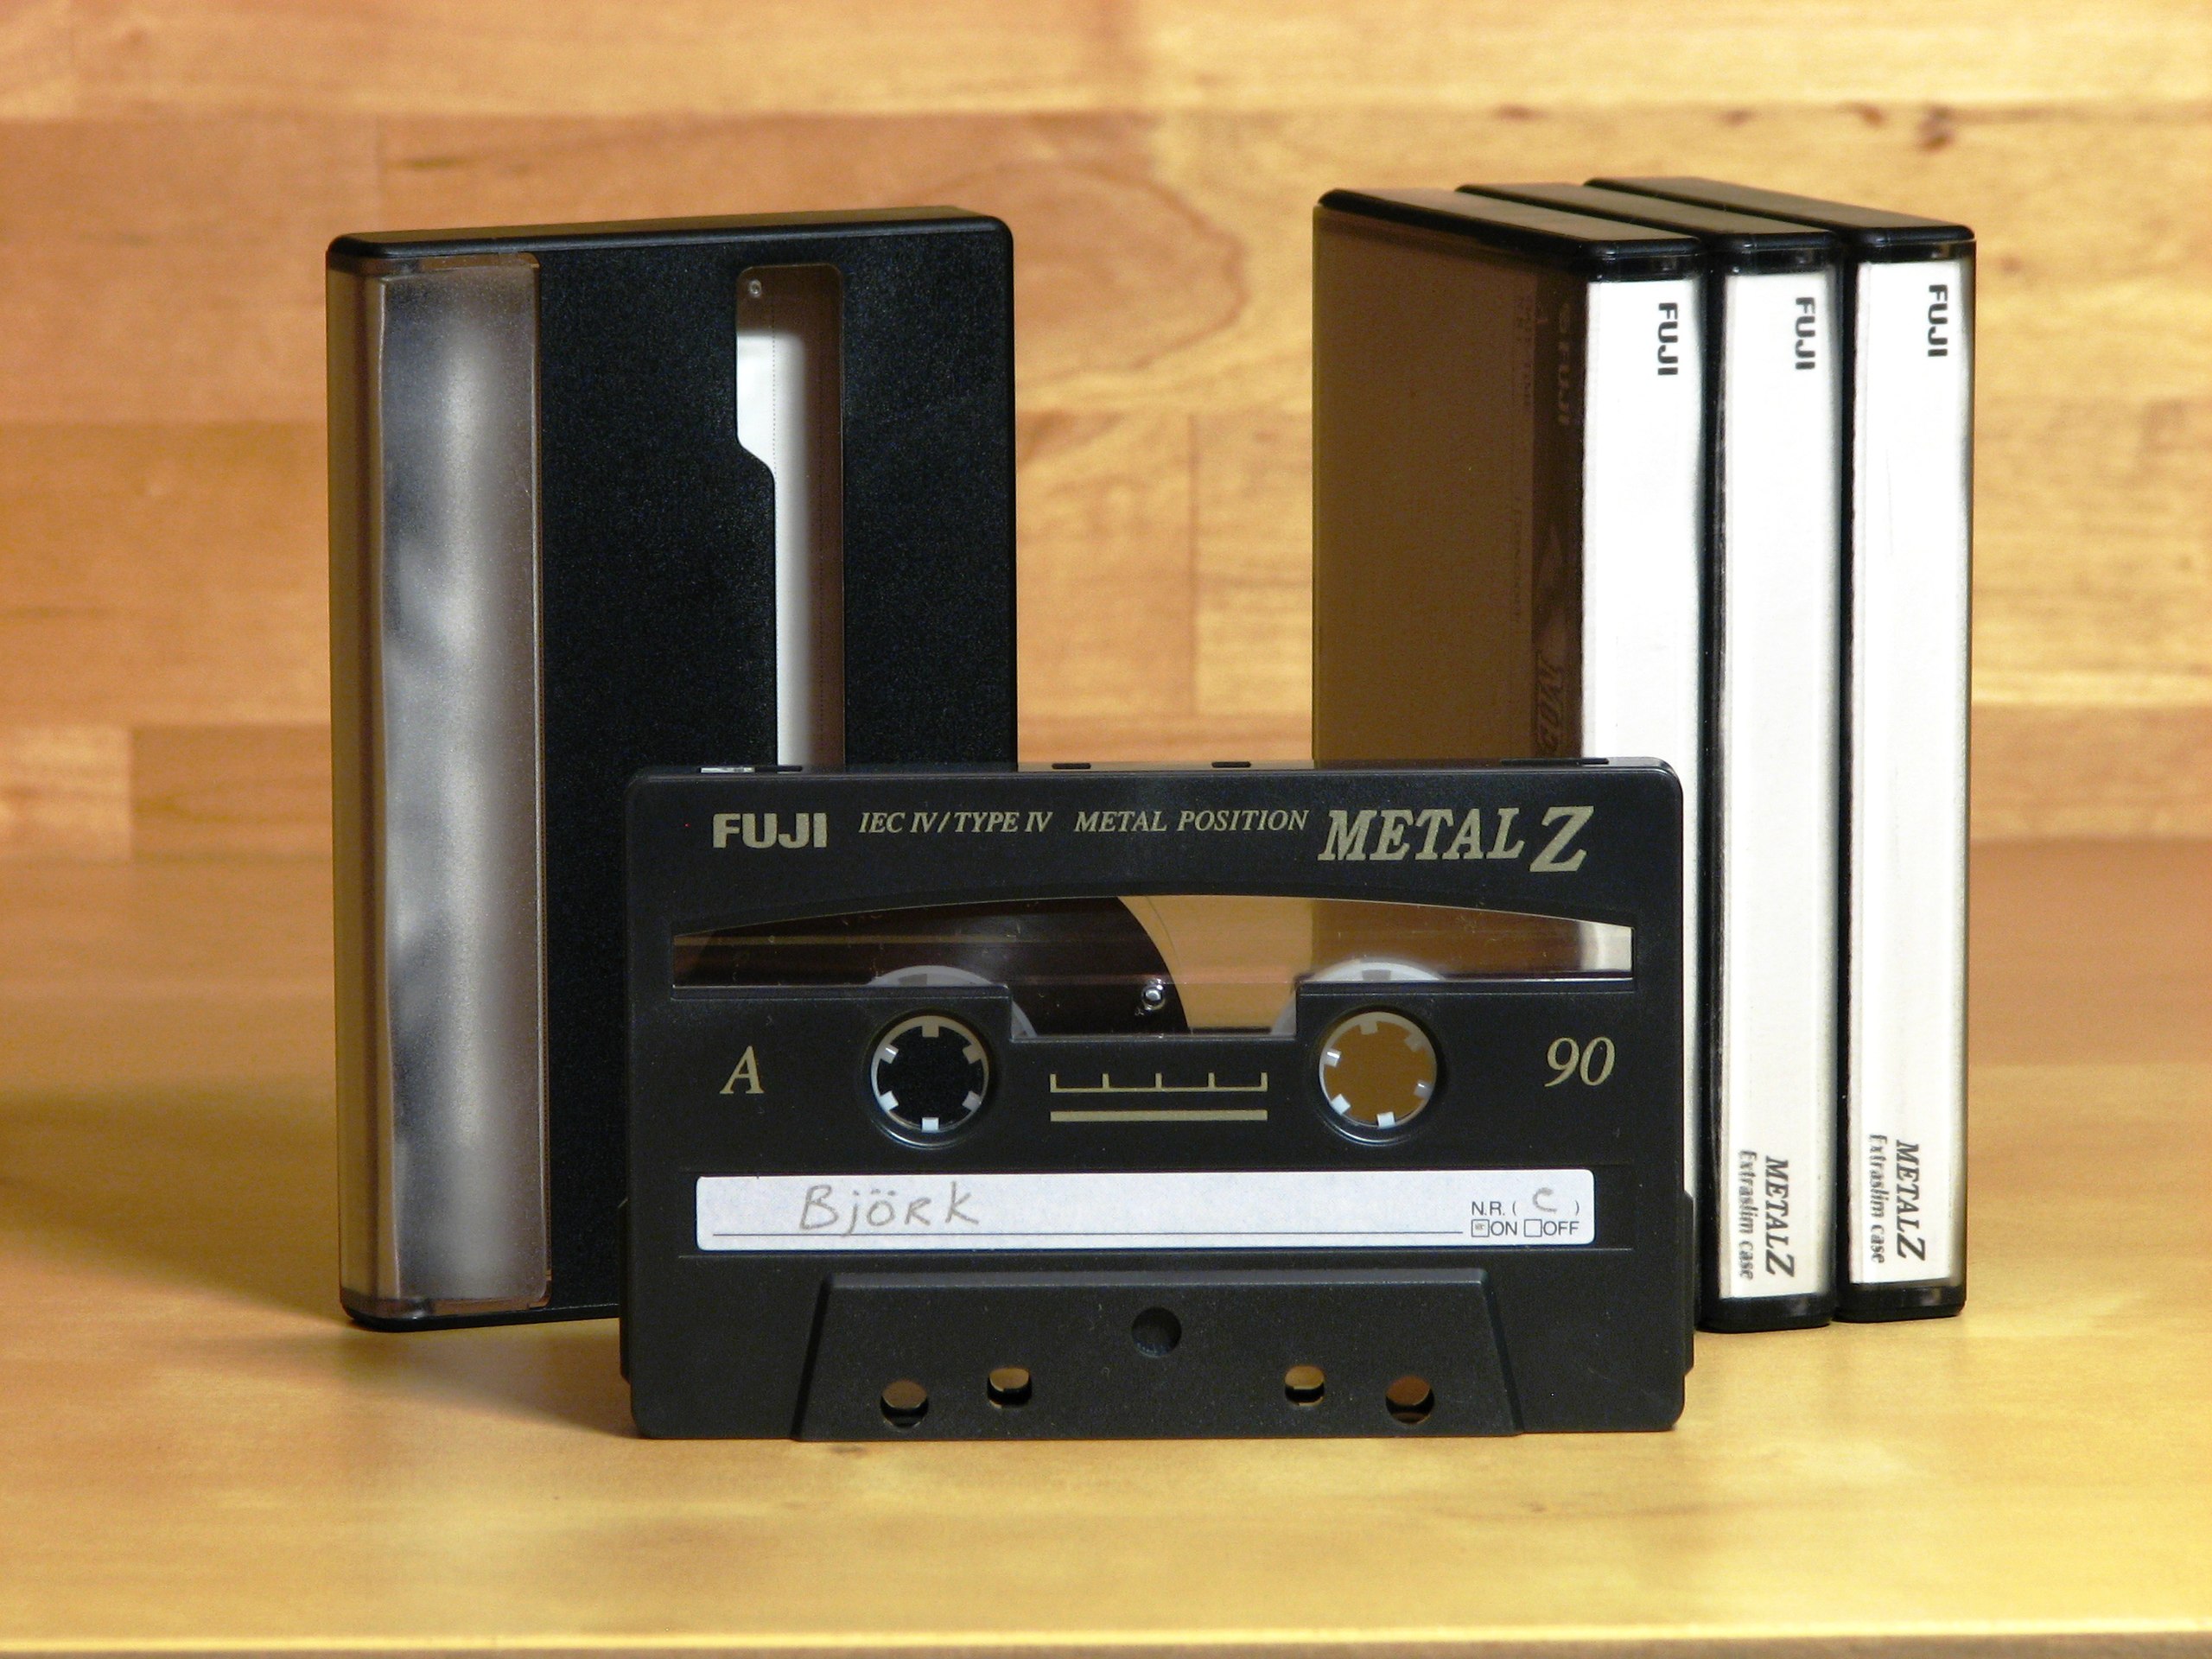 Bemiddelaar essence Opeenvolgend File:Compact Cassette - Fuji Metal Z 90.JPG - Wikimedia Commons